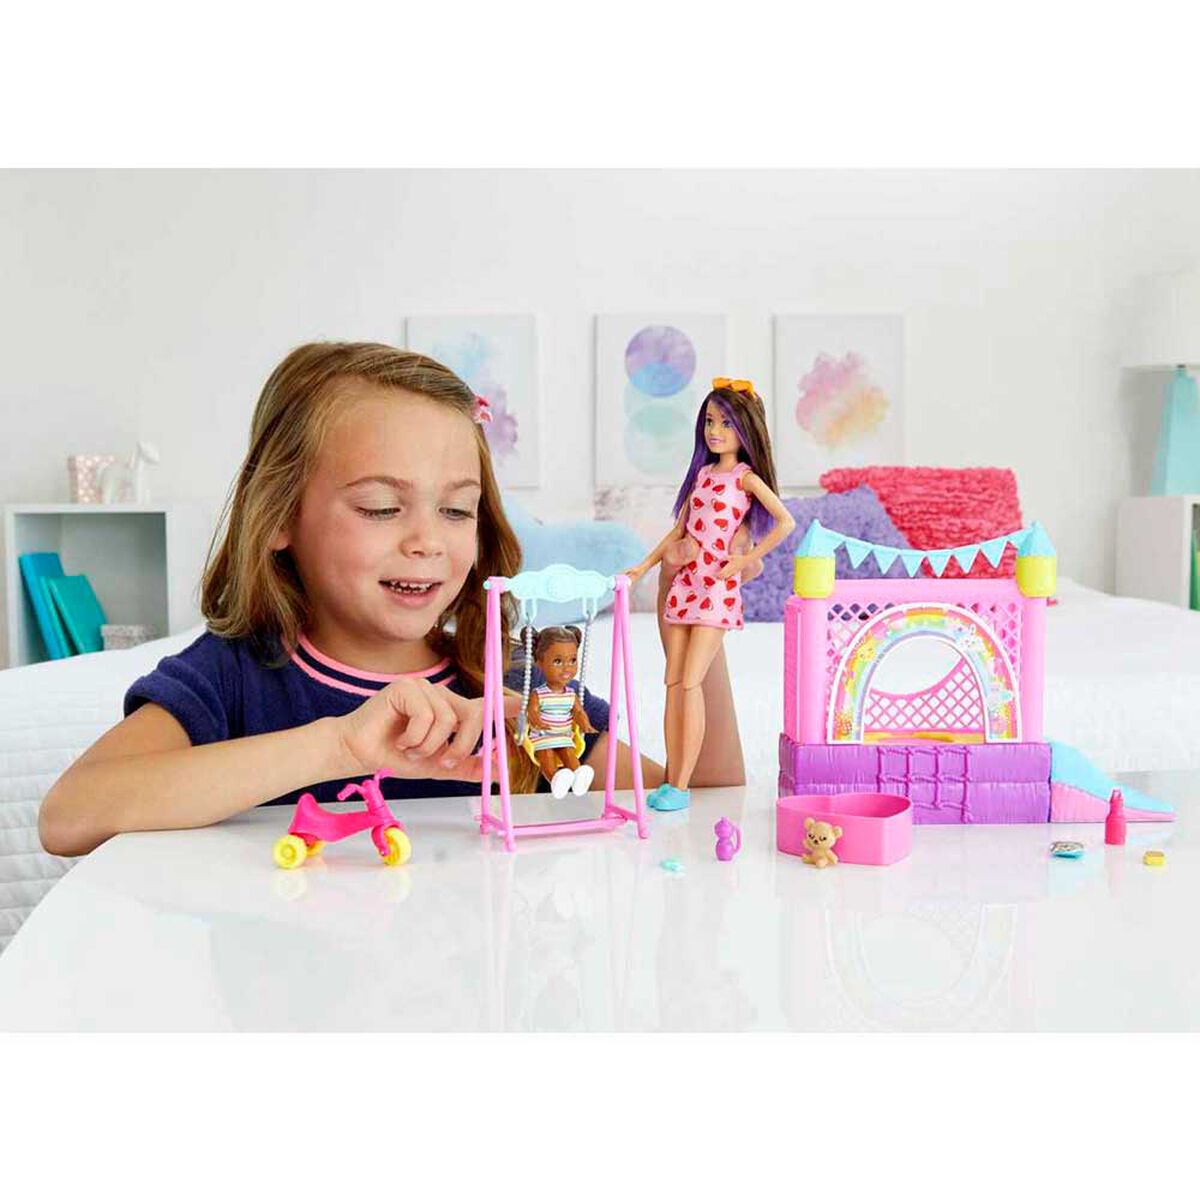 Set de Juego Skipper Babysitter Parque de Juegos Barbie